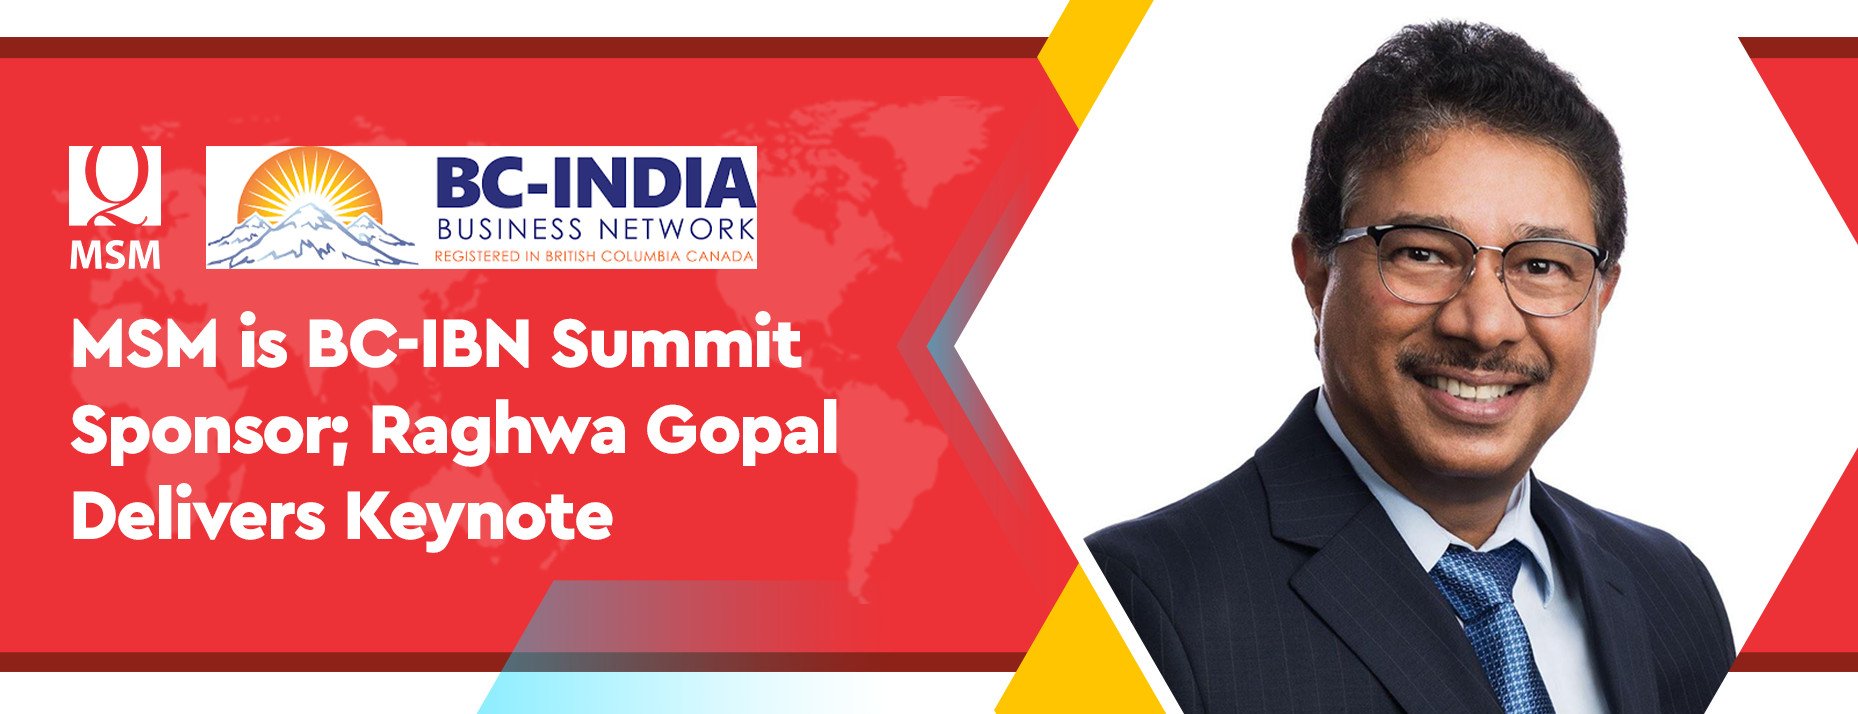 MSM is BC-IBN Summit Sponsor; Raghwa Gopal Delivers Keynote